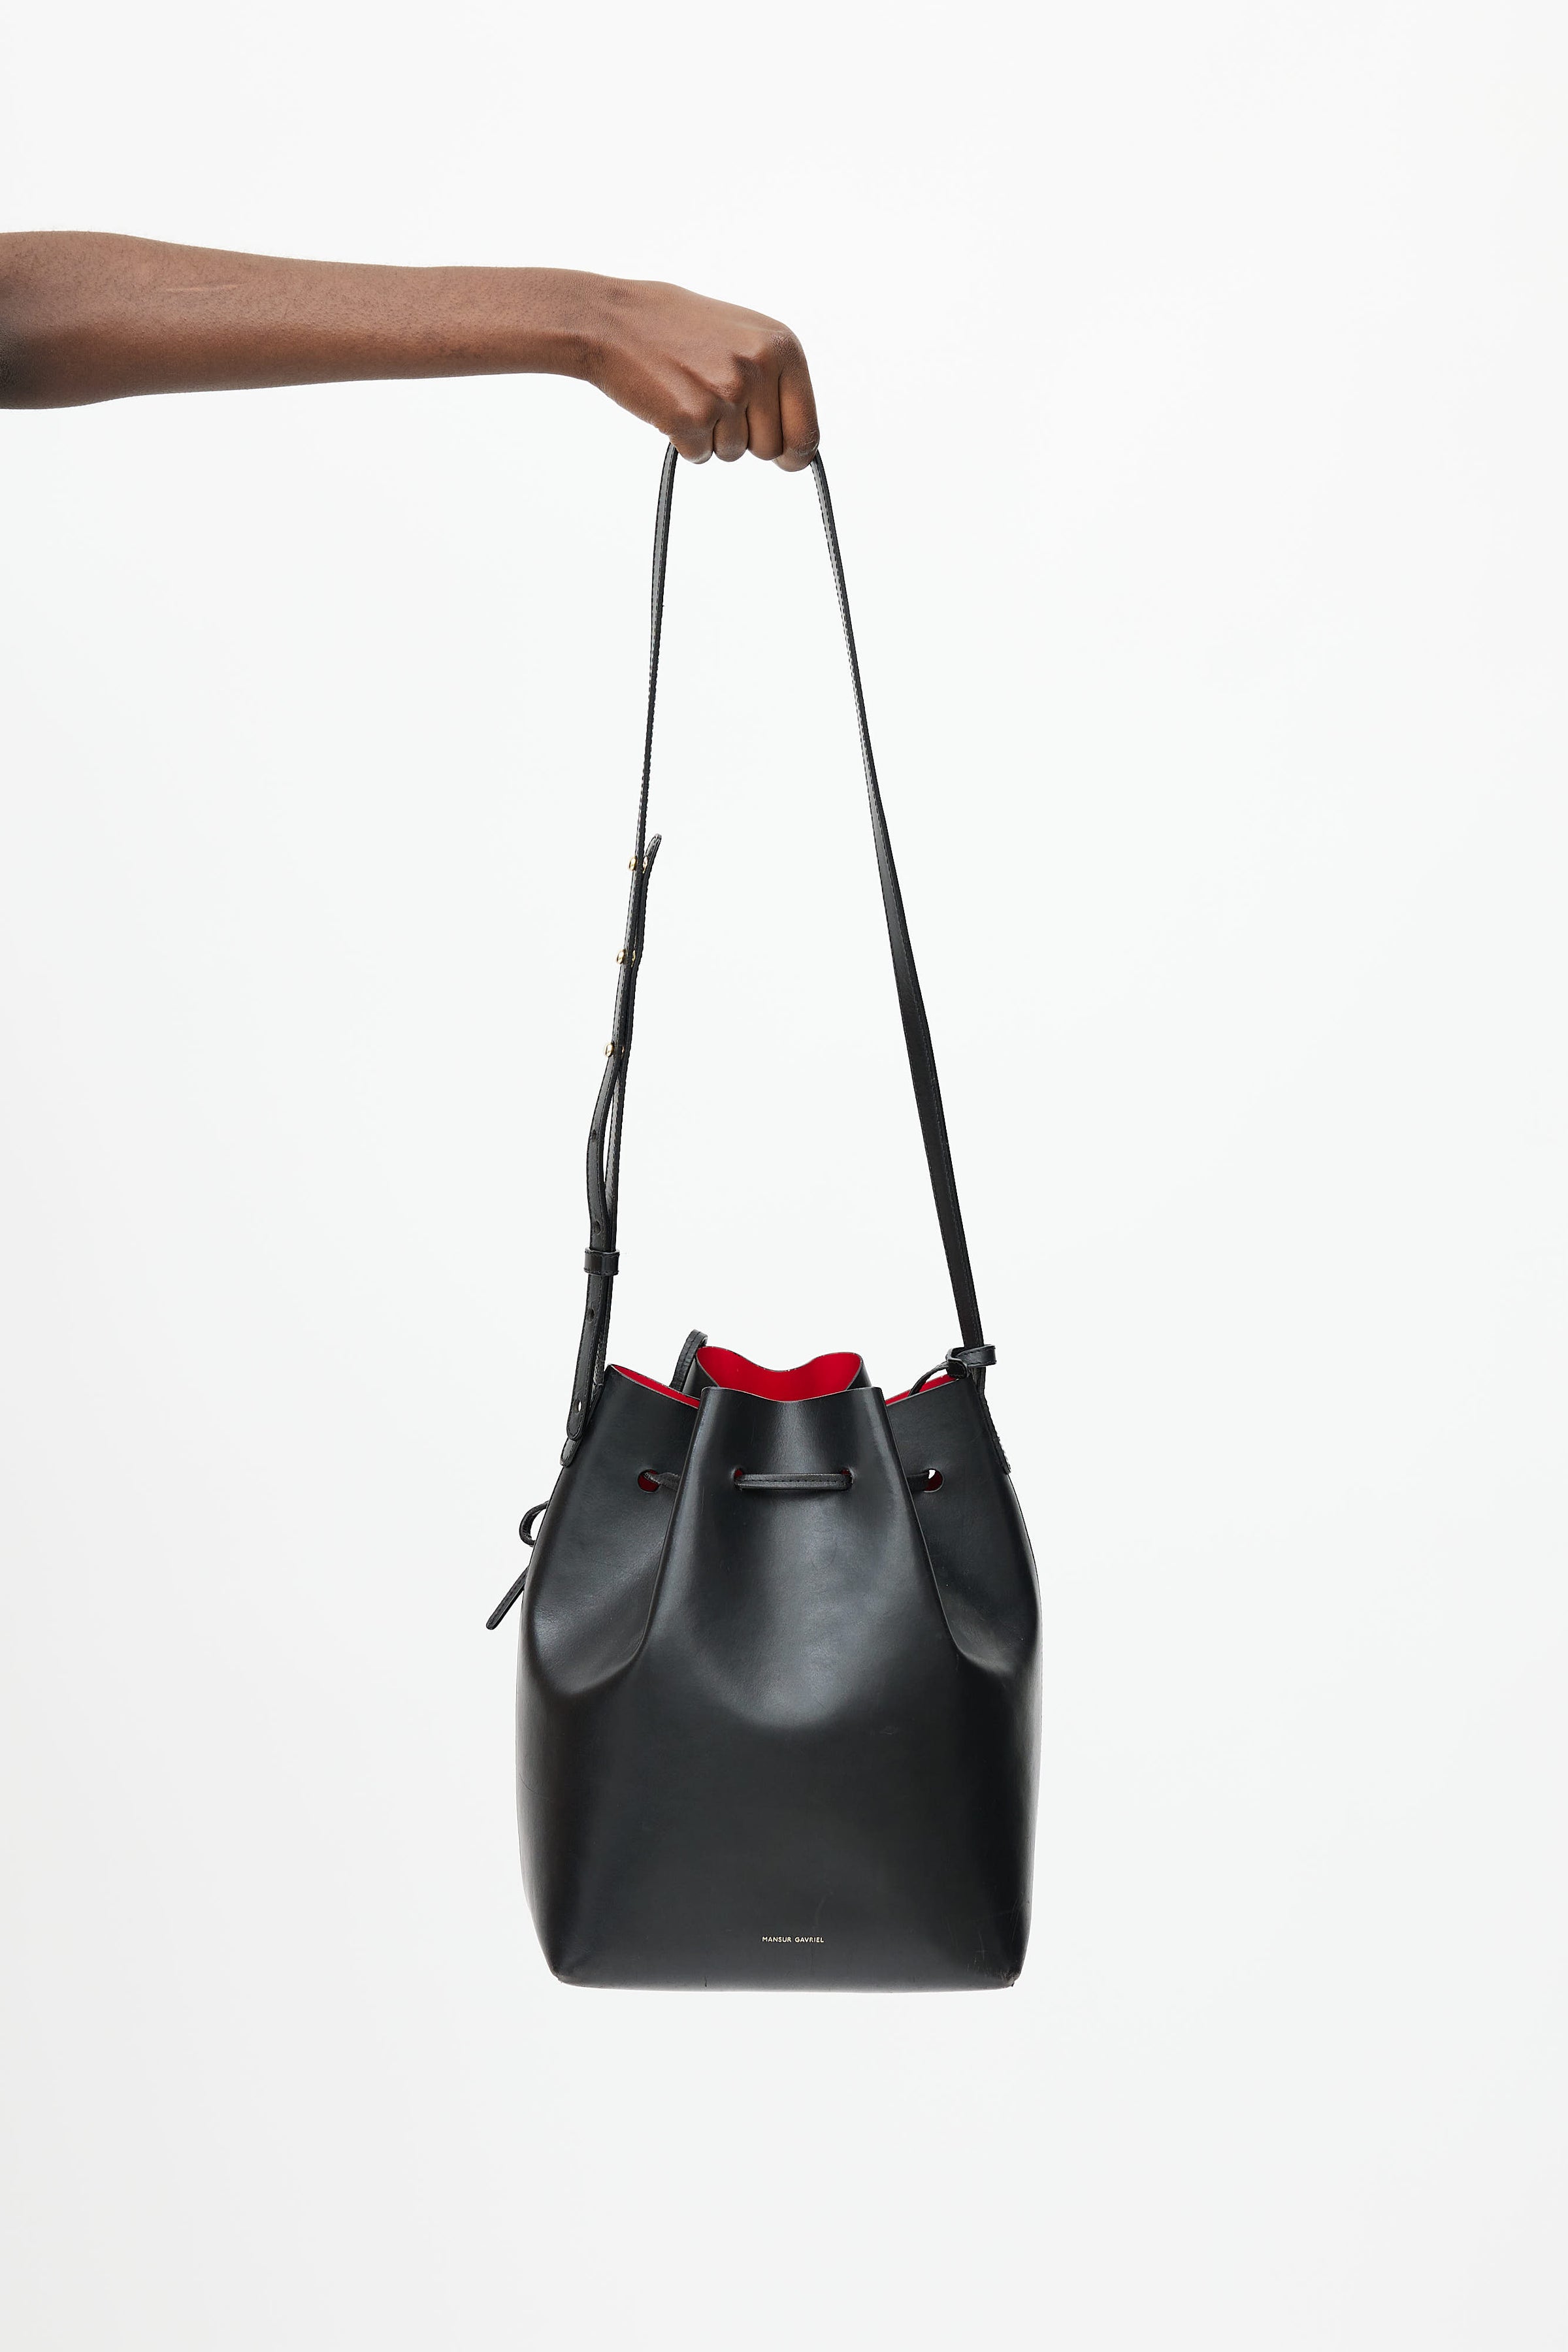 Mansur Gavriel Authenticated Leather Handbag